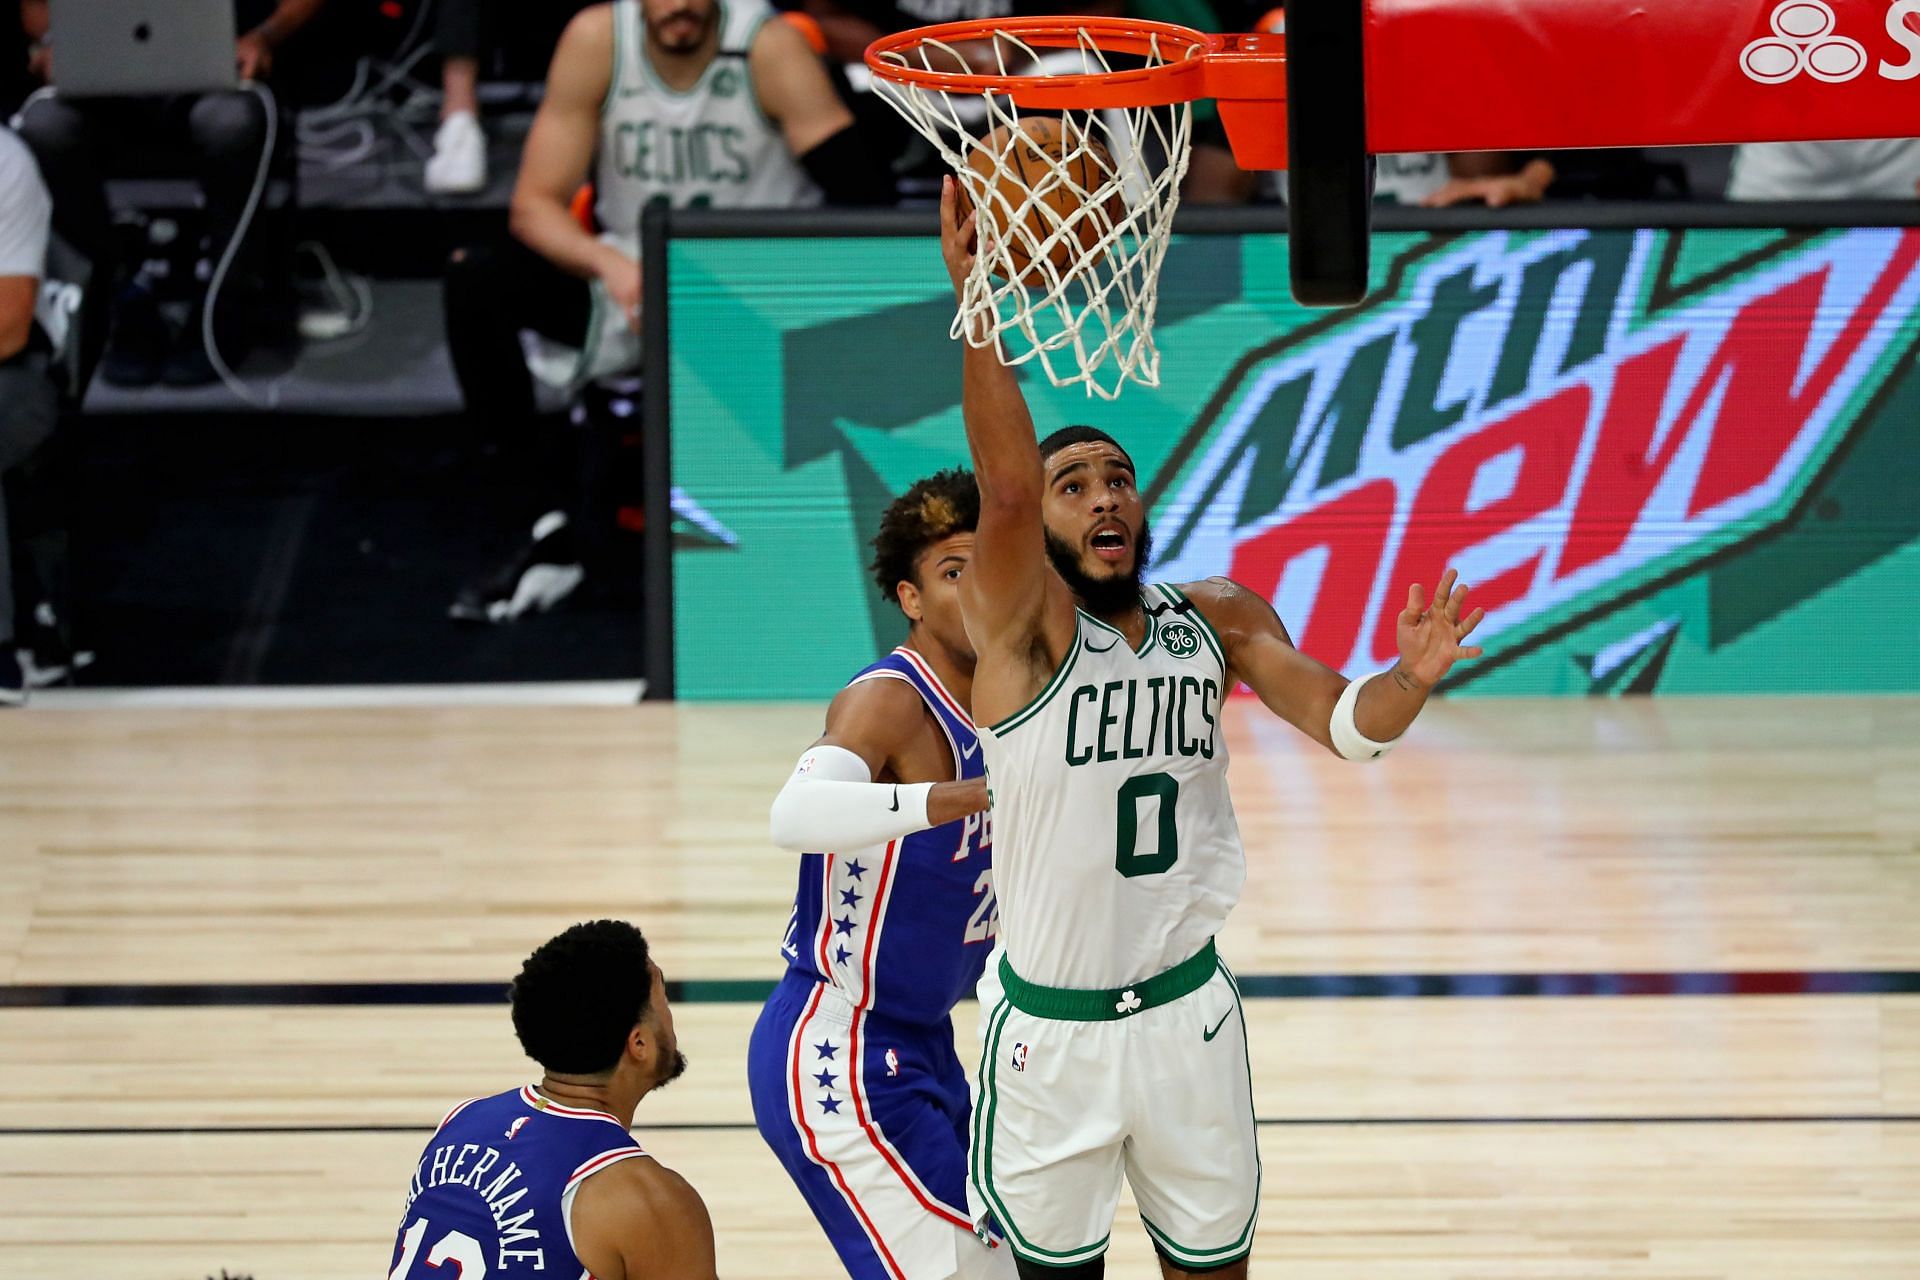 The Boston Celtics will host the Philadelphia 76ers on December 20th